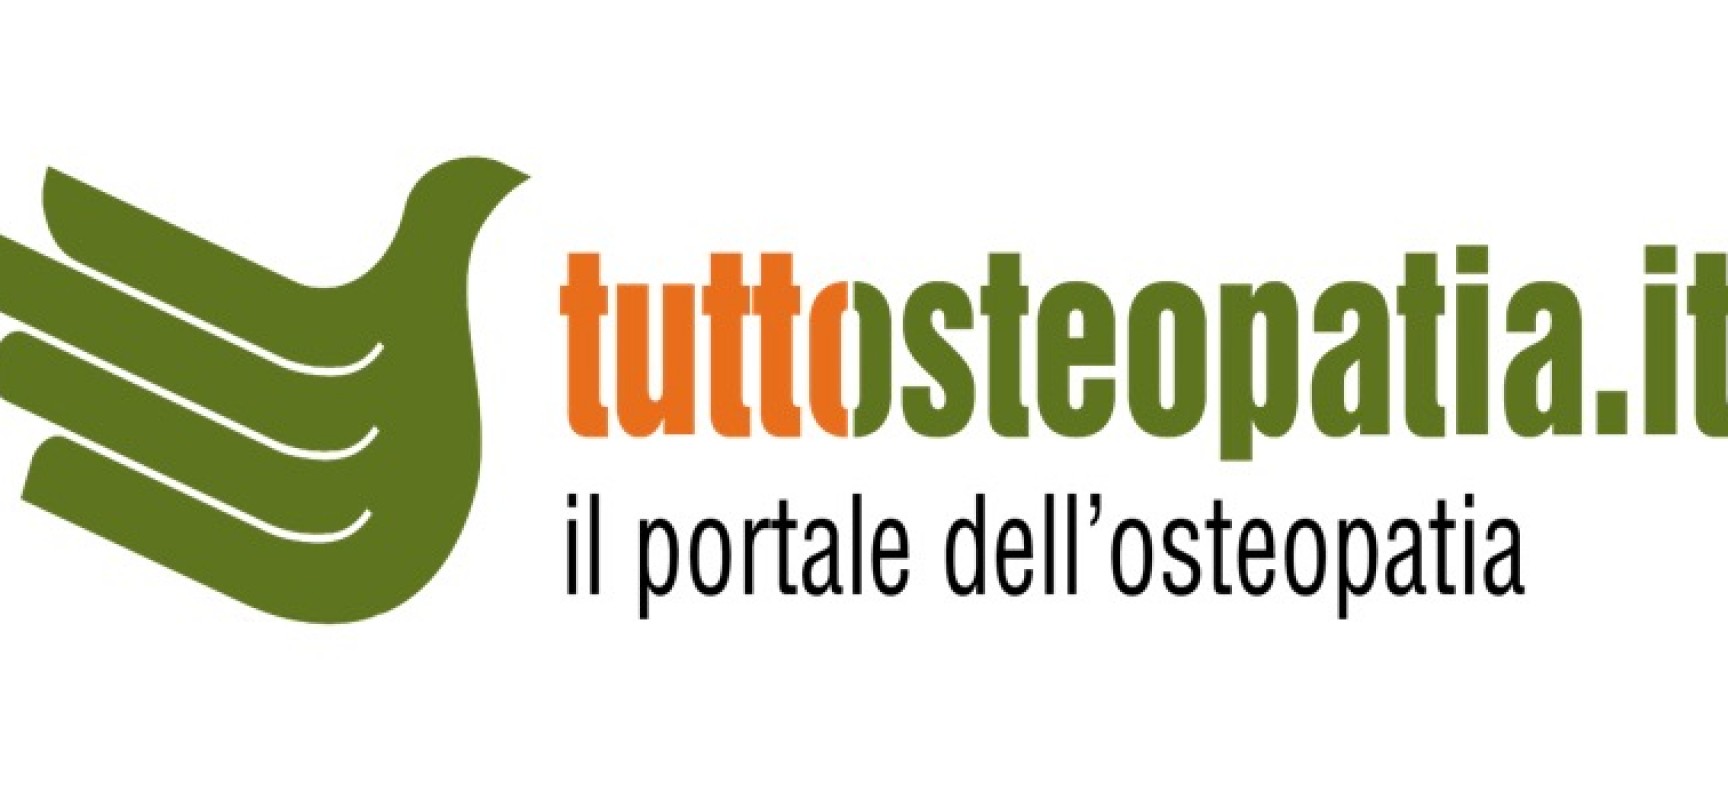 Tuttosteopatia.it: il portale del biscegliese Massimo Valente compie dieci anni